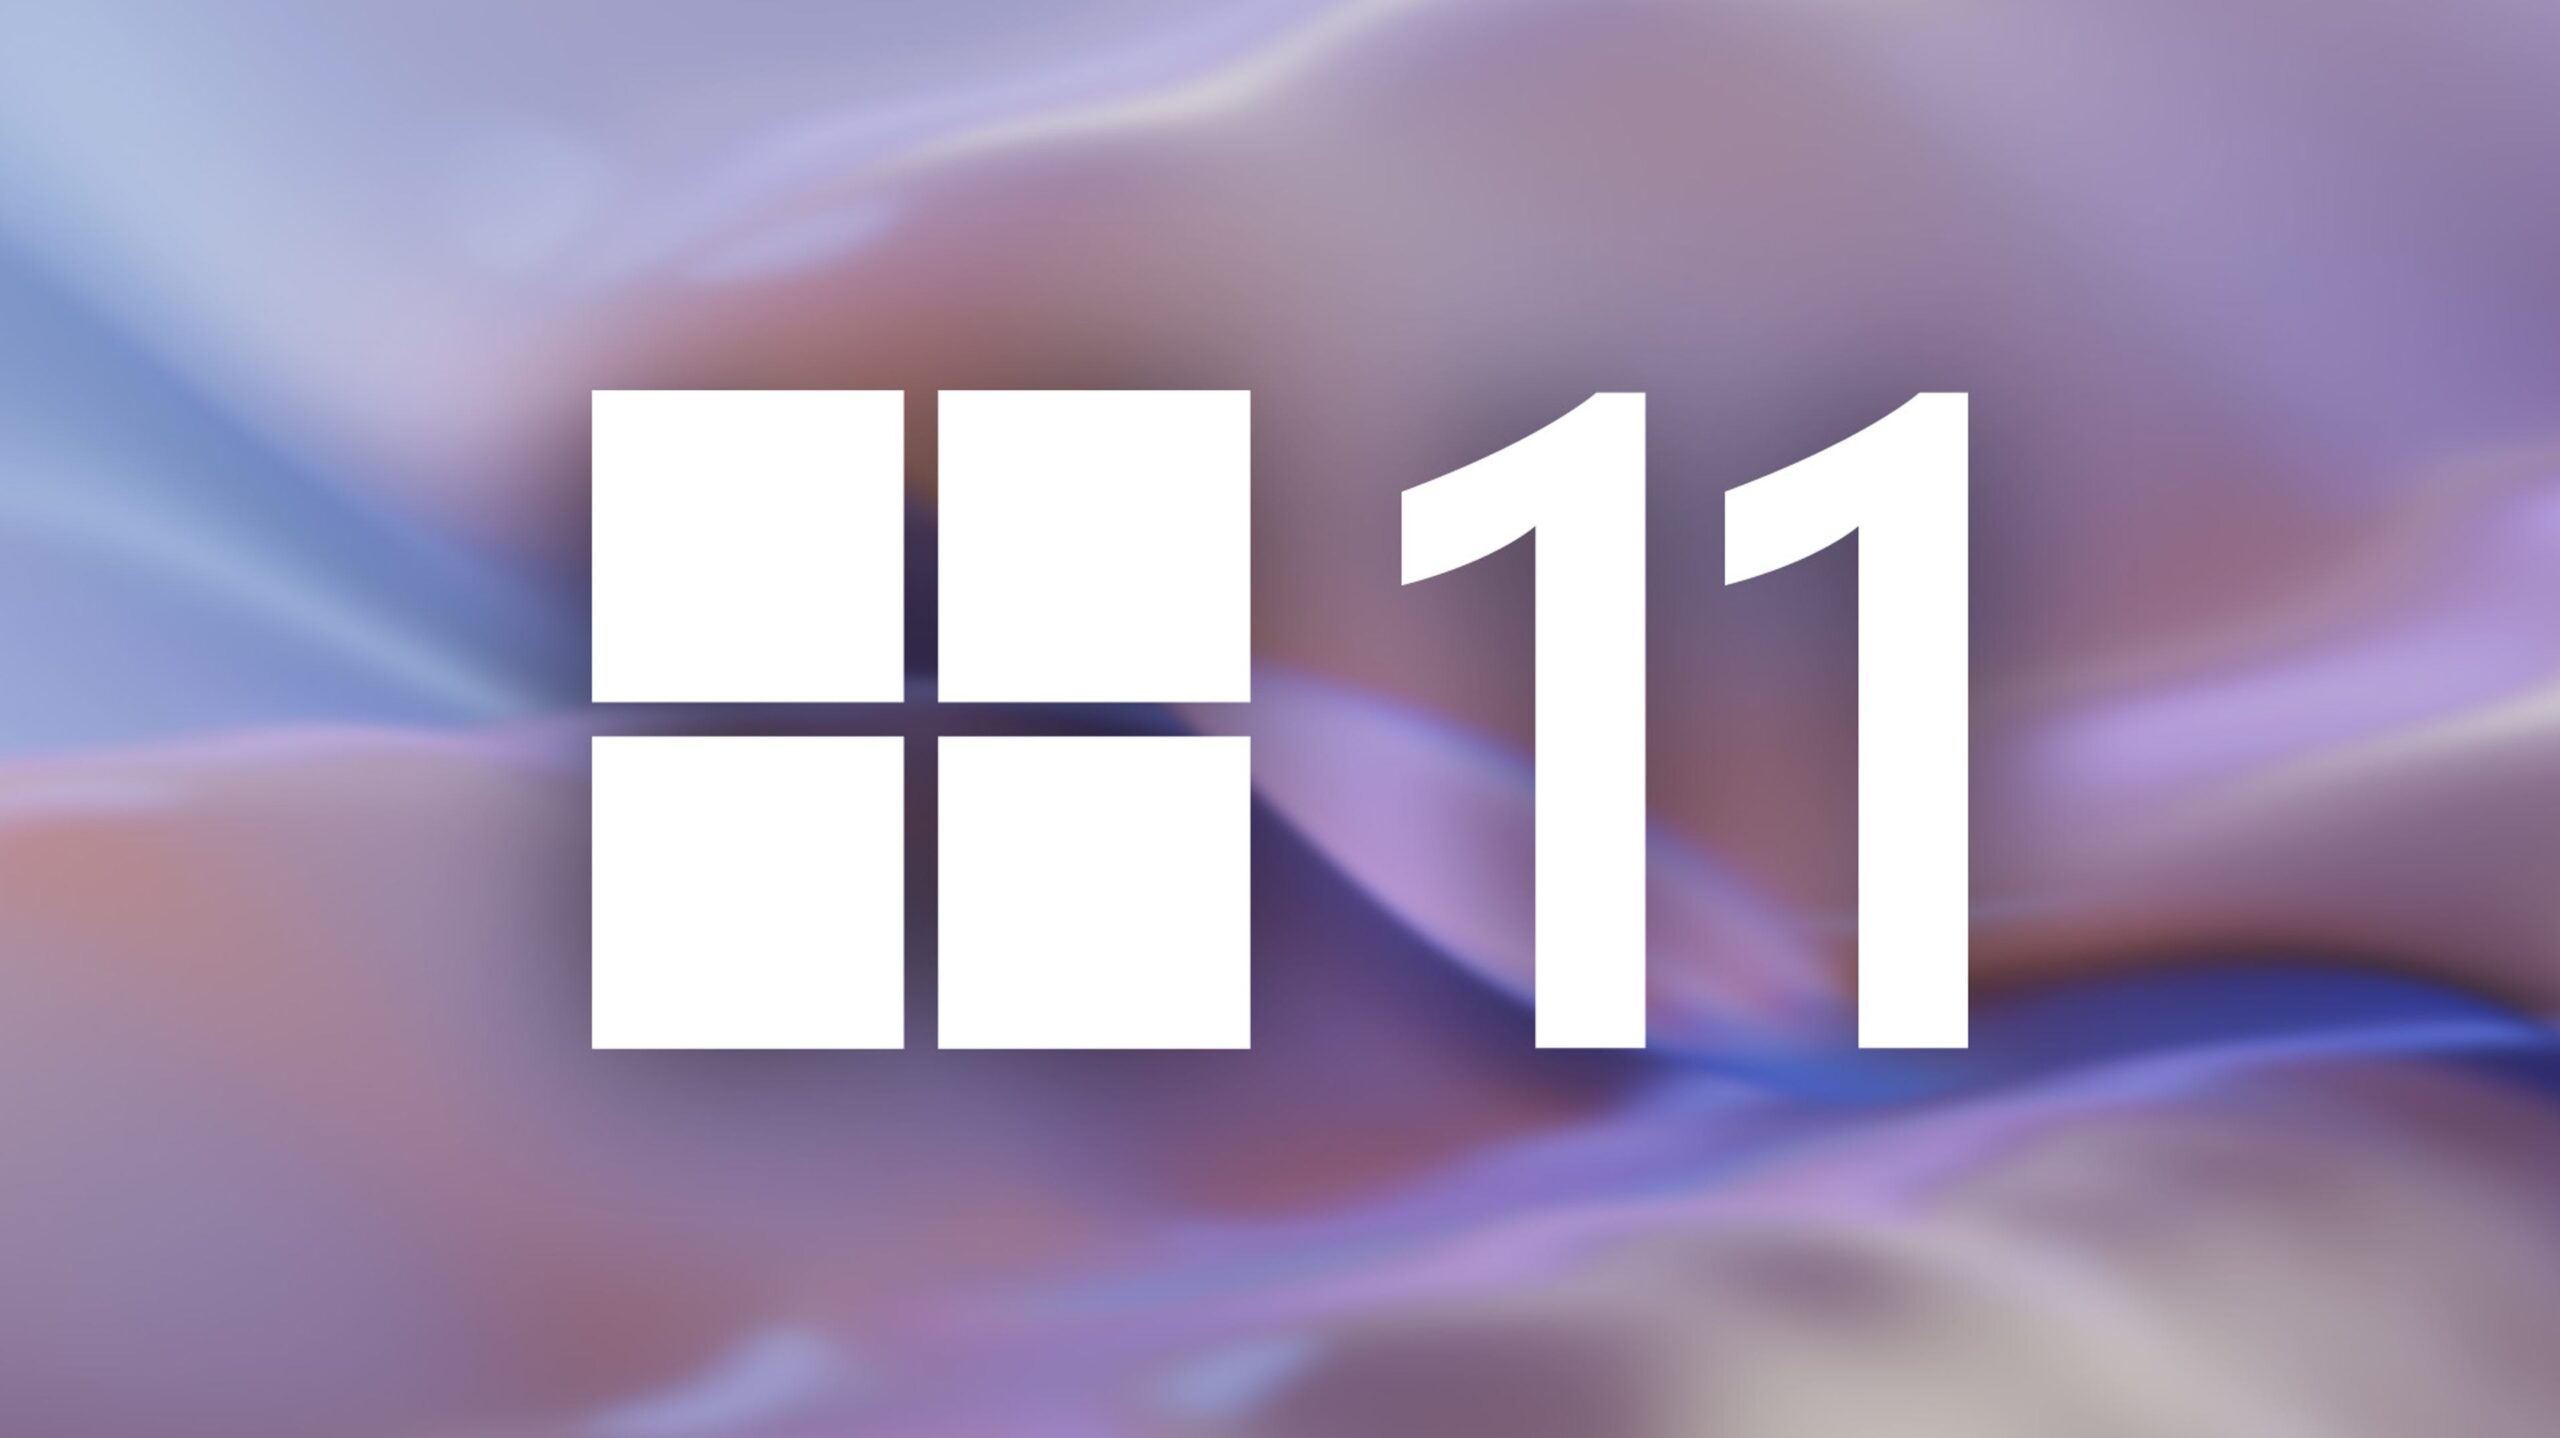 windows-11-sta-testando-gli-aggiornamenti-al-microsoft-store